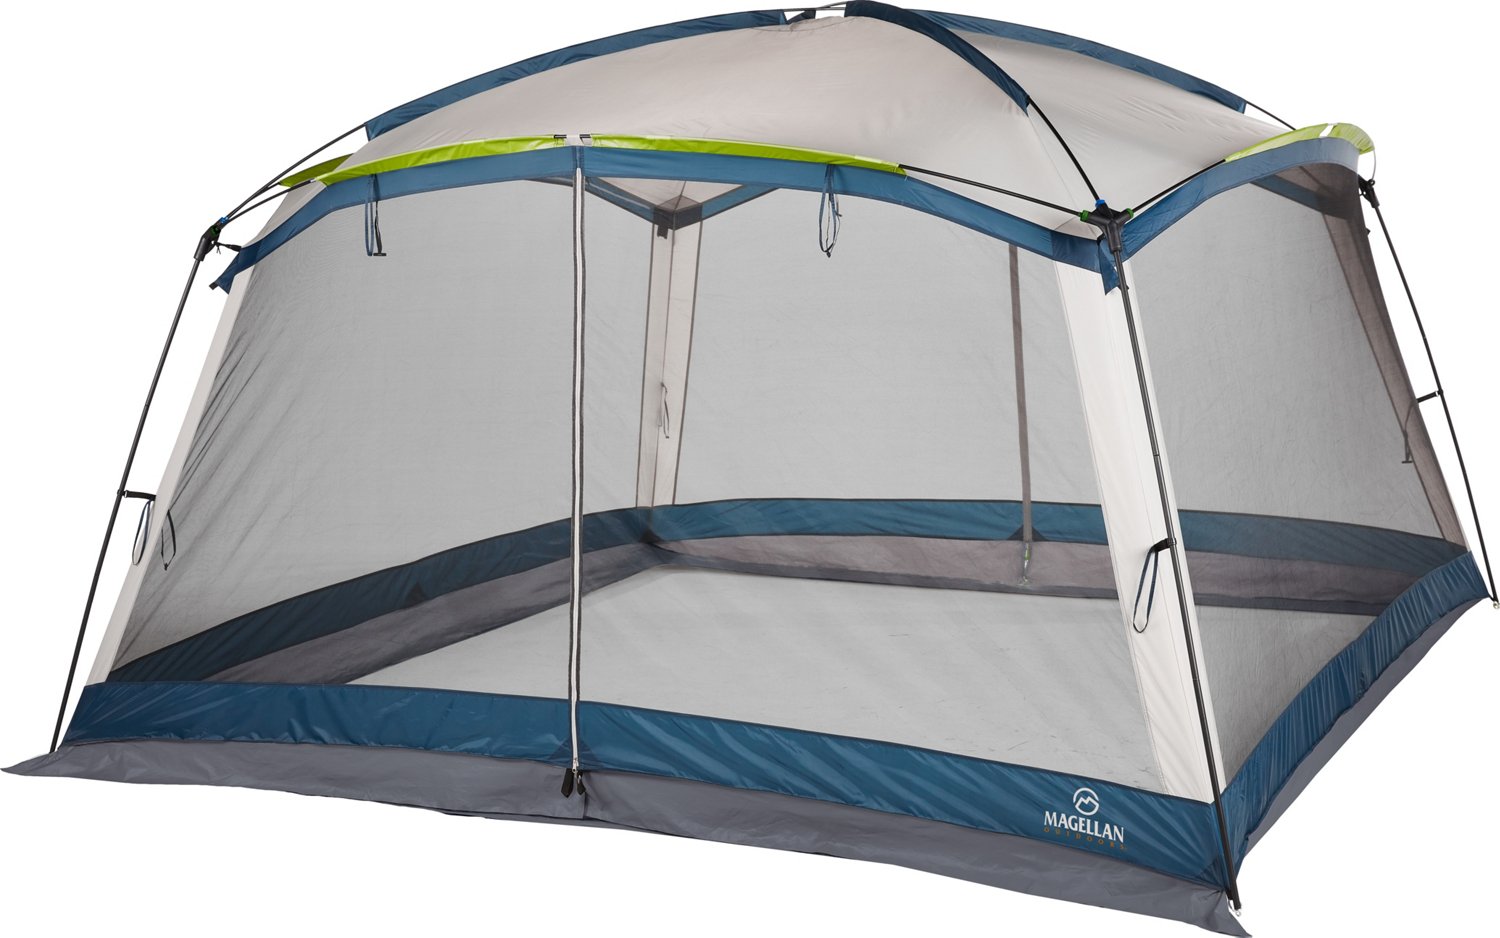 sleeping tent price